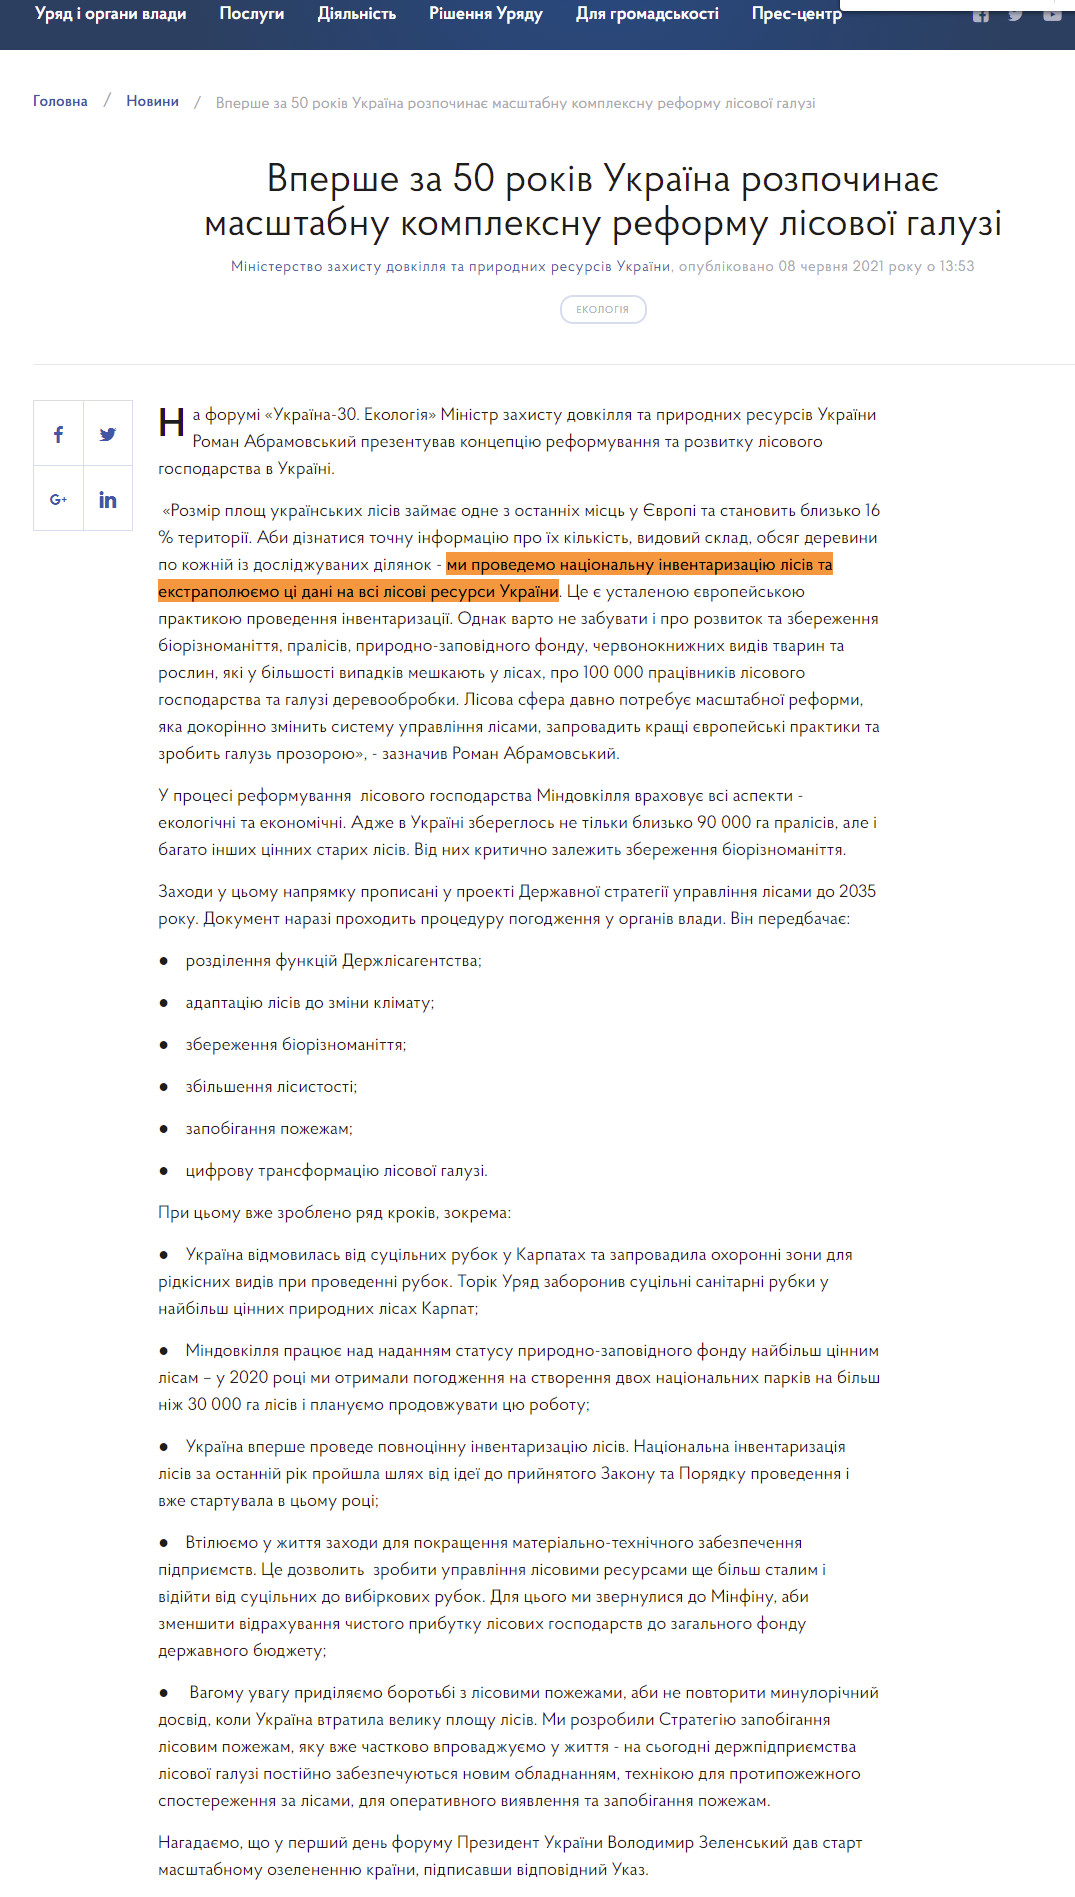 https://www.kmu.gov.ua/news/vpershe-za-50-rokiv-ukrayina-rozpochinaye-masshtabnu-kompleksnu-reformu-lisovoyi-galuzi